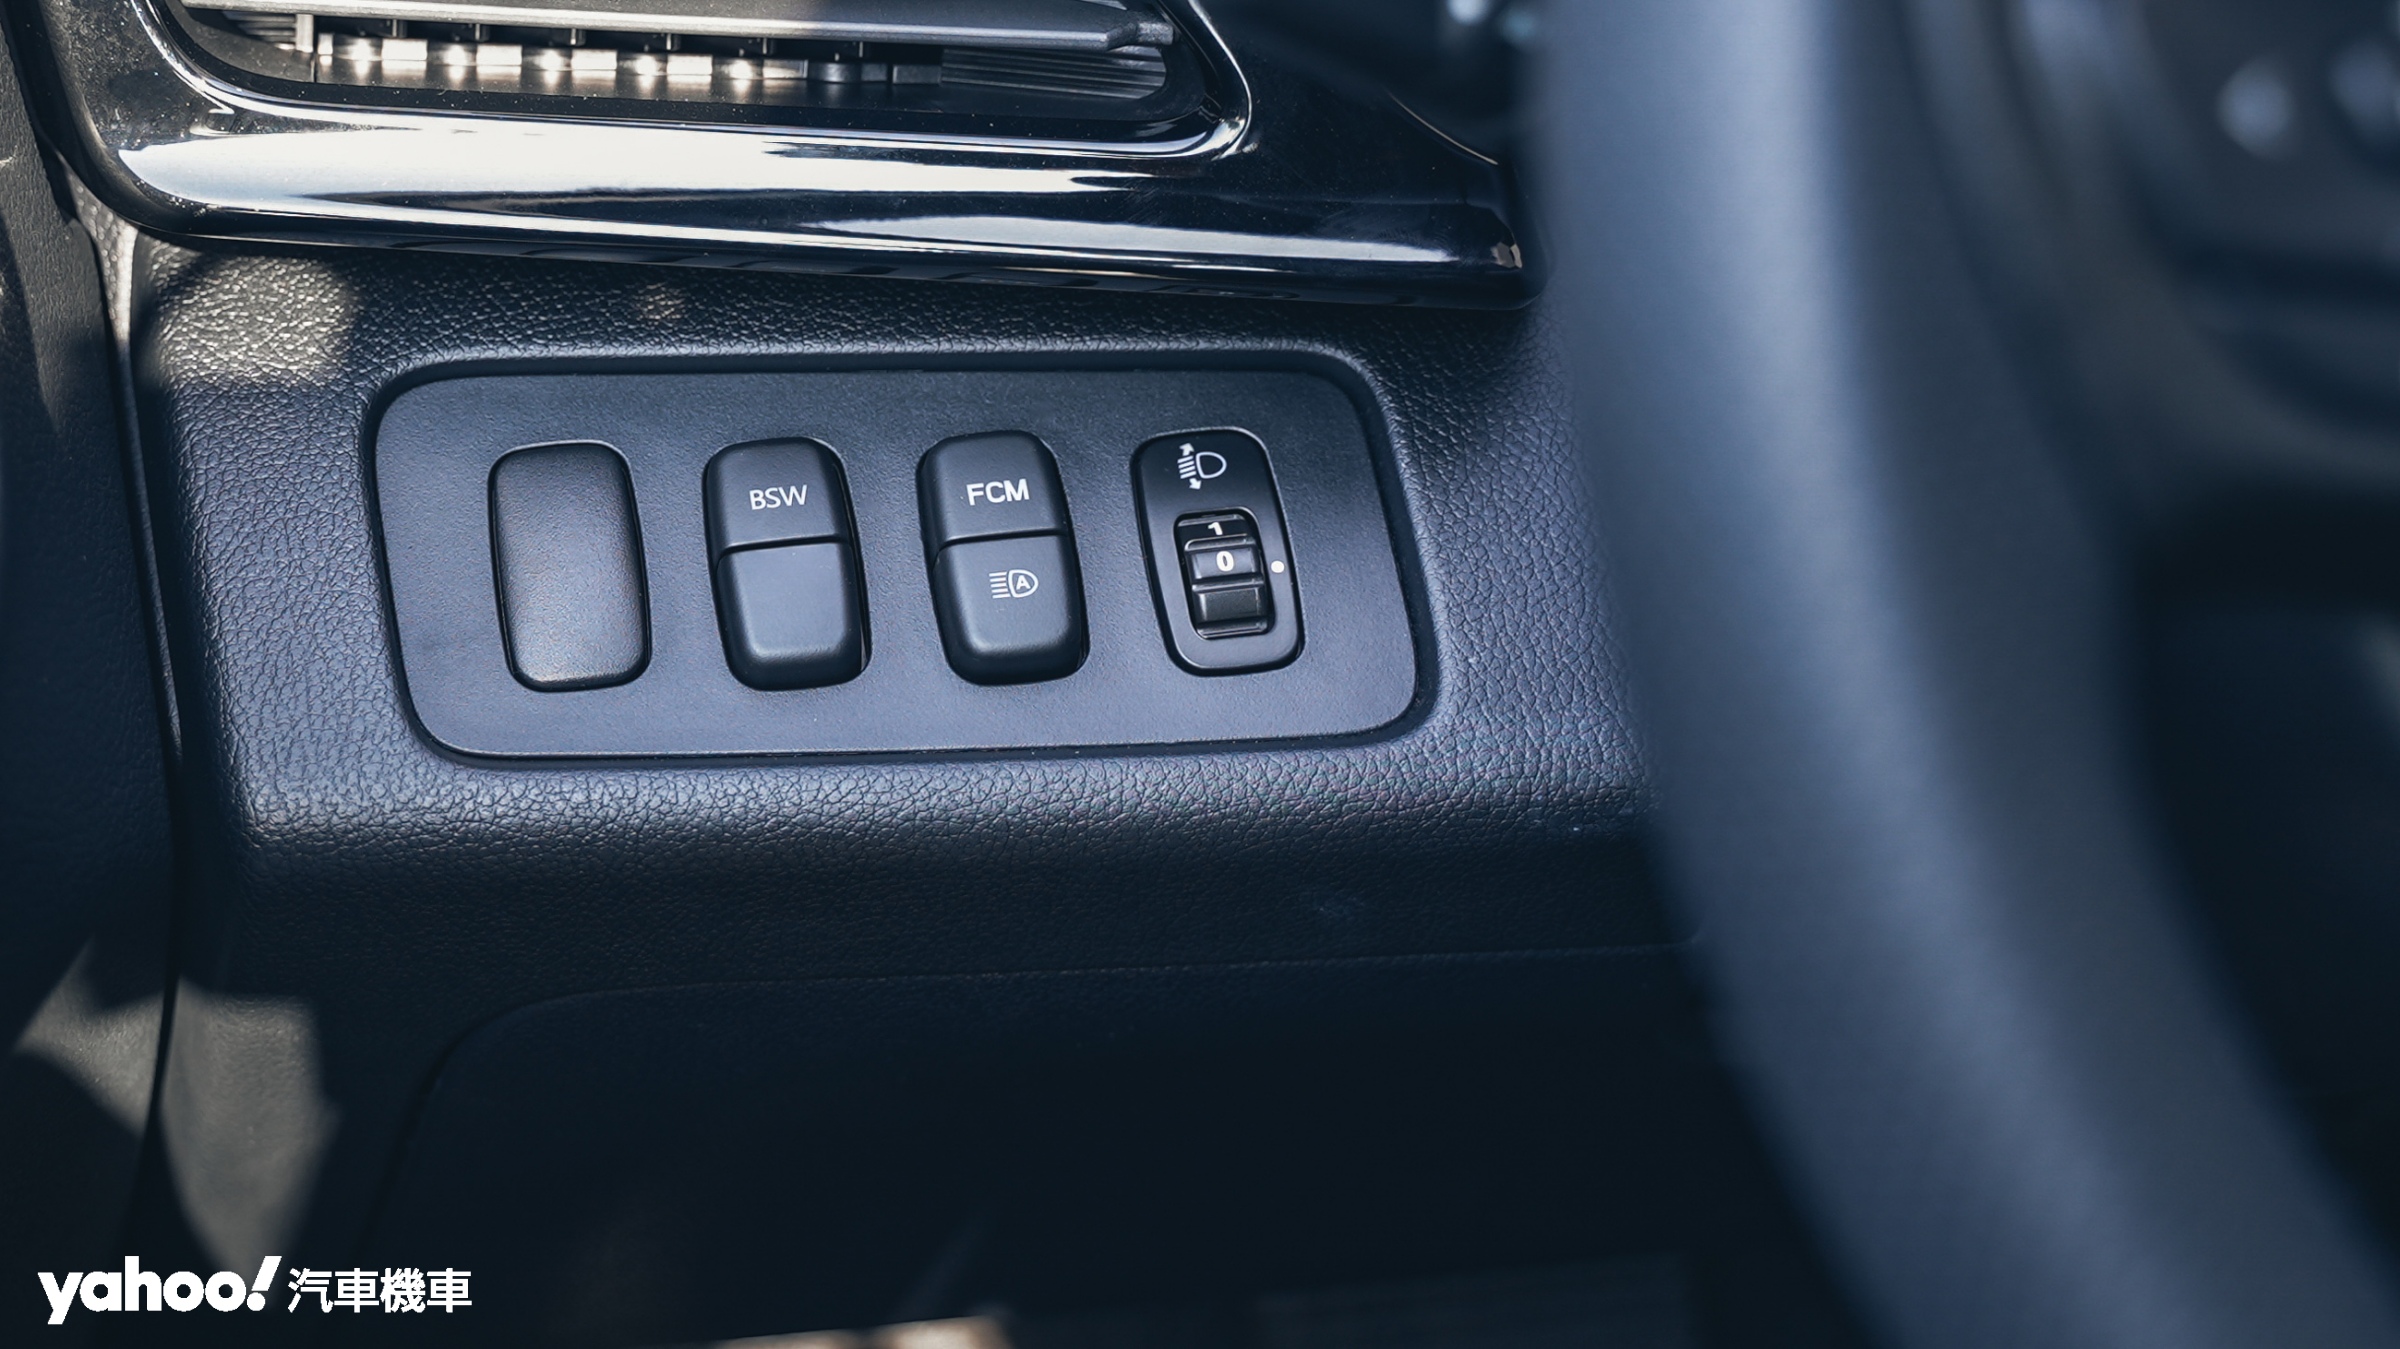 常駐使用的BSW、FCM則是擺在駕駛者左側的操作面板。